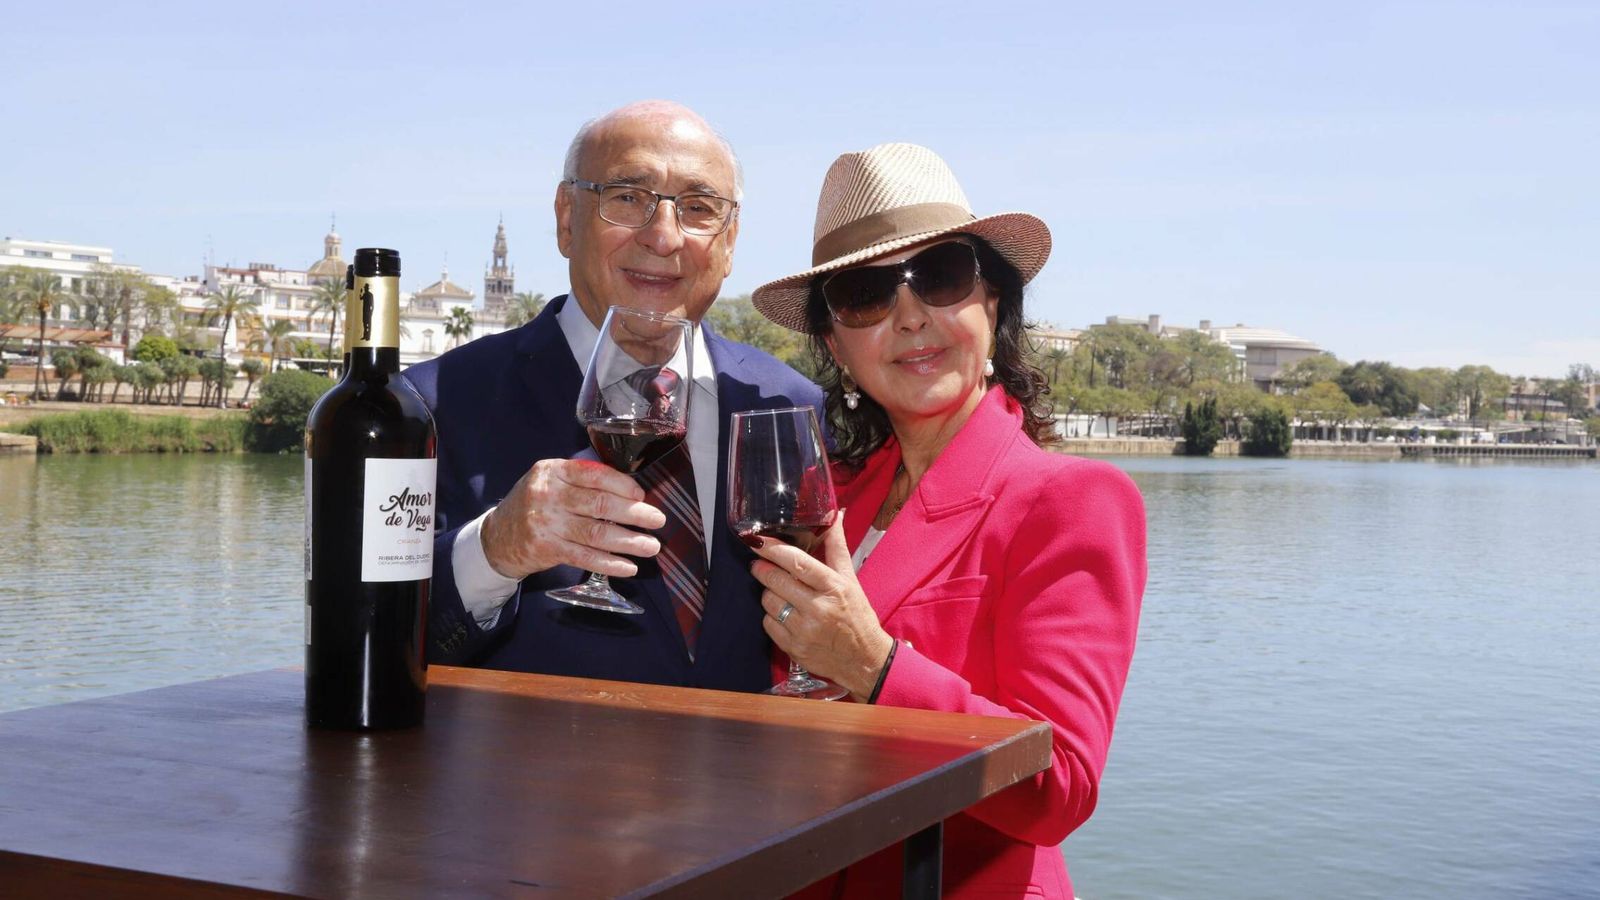 Manuel Vega y María José Santiago, brindando con el vino. (Cordon Press)